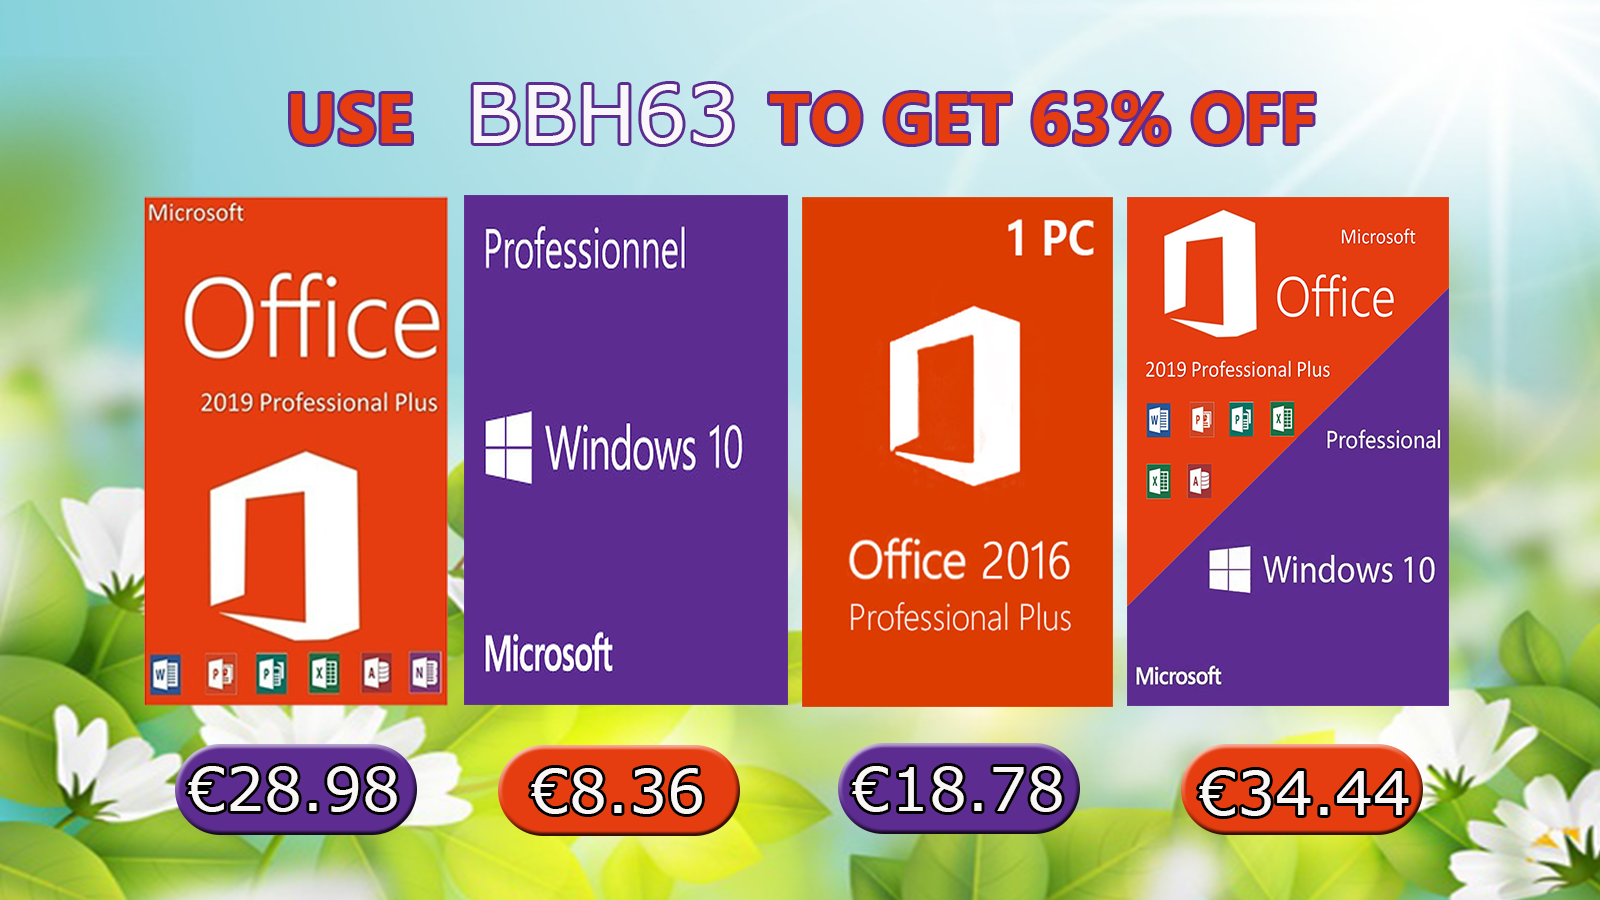 OEM aktivacijski ključ za Windows 10 Pro samo 8,36 eura - Promo @ Bug.hr